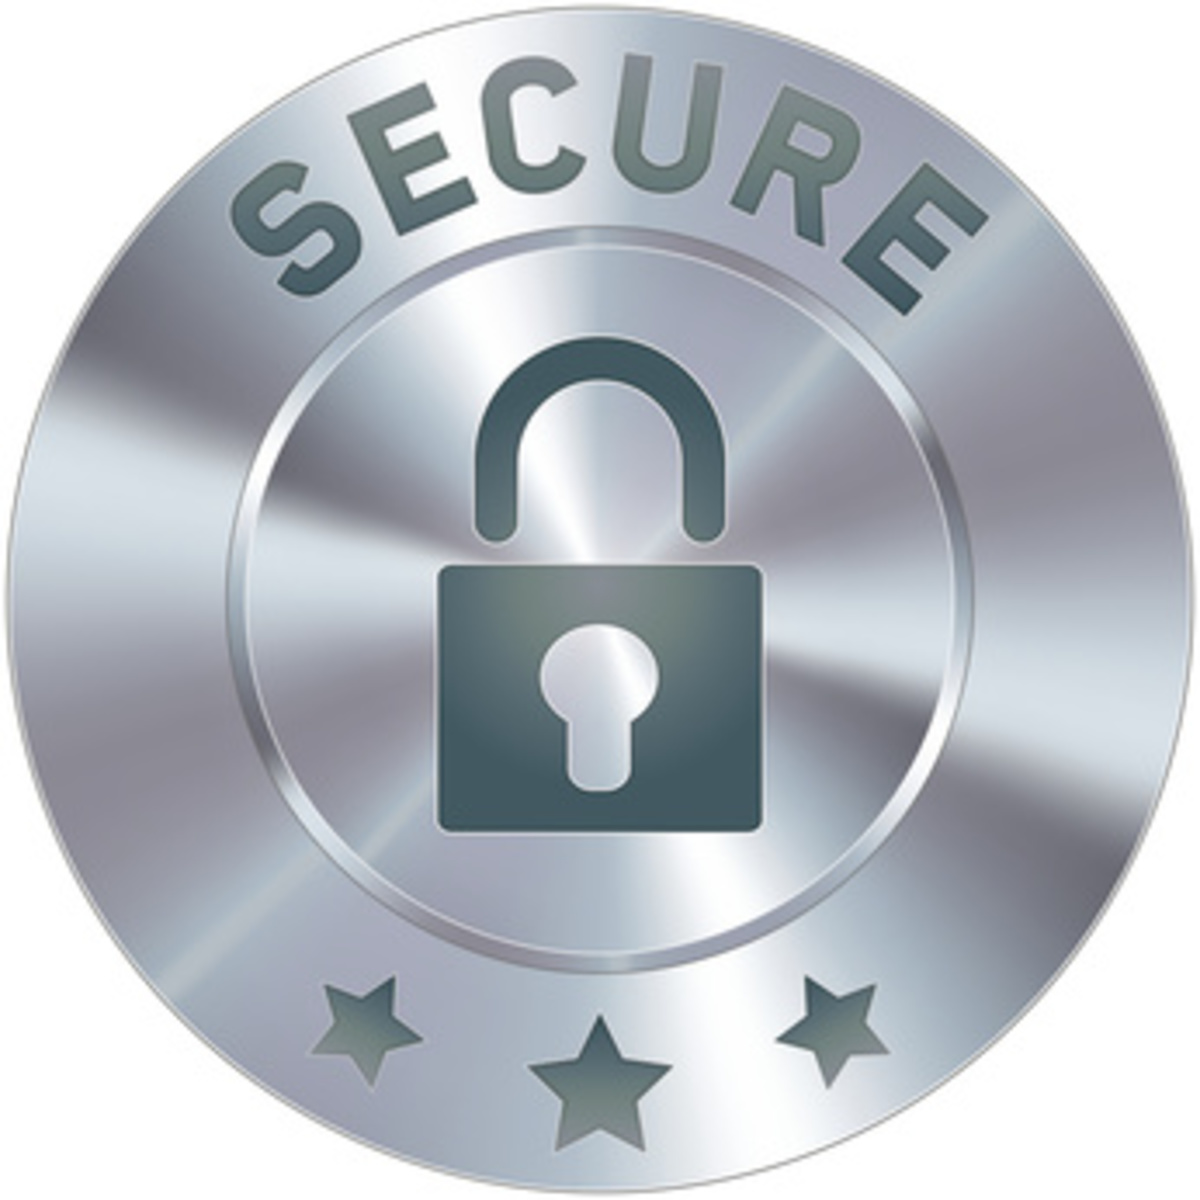 【OSS】ニュージーランド運輸庁、セキュリティ開発ライフサイクルツール「SDLT」をオープンソース化---必要なセキュリティ保証タスクを管理